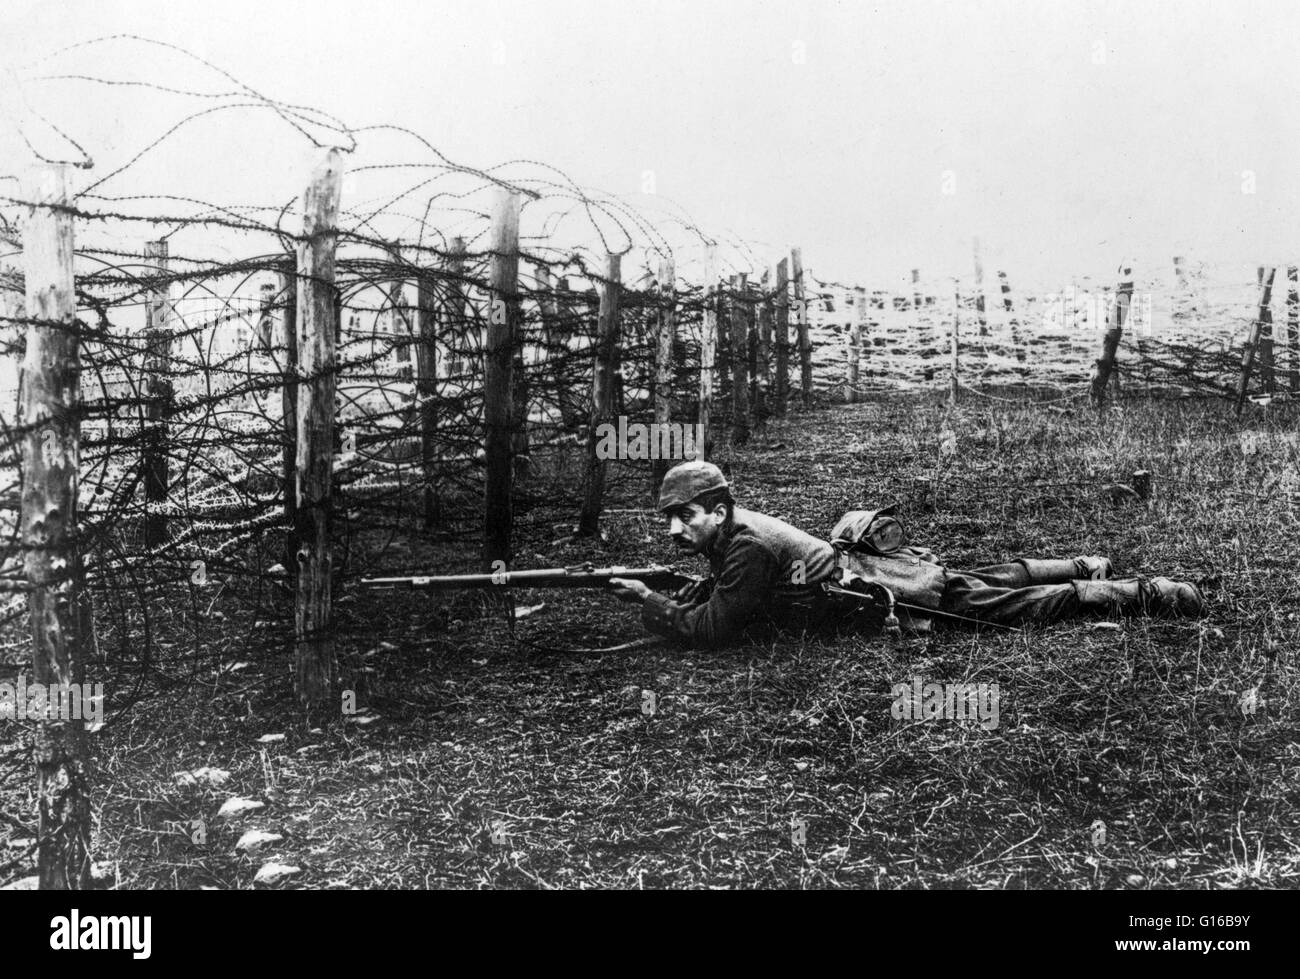 Deutsche Scharfschützen Verlegung auf Boden in der Nähe von Stacheldraht Abwehrkräfte. In der gesamten ersten Weltkrieg Scharfschützen oft dienten in den Schützengräben in einer Bemühung, nehmen Sie feindliche Soldaten, als ihre Köpfe über den oberen Teil der gegnerischen Graben spähte. Am Anfang von WW I, nur Deutschland Stockfoto